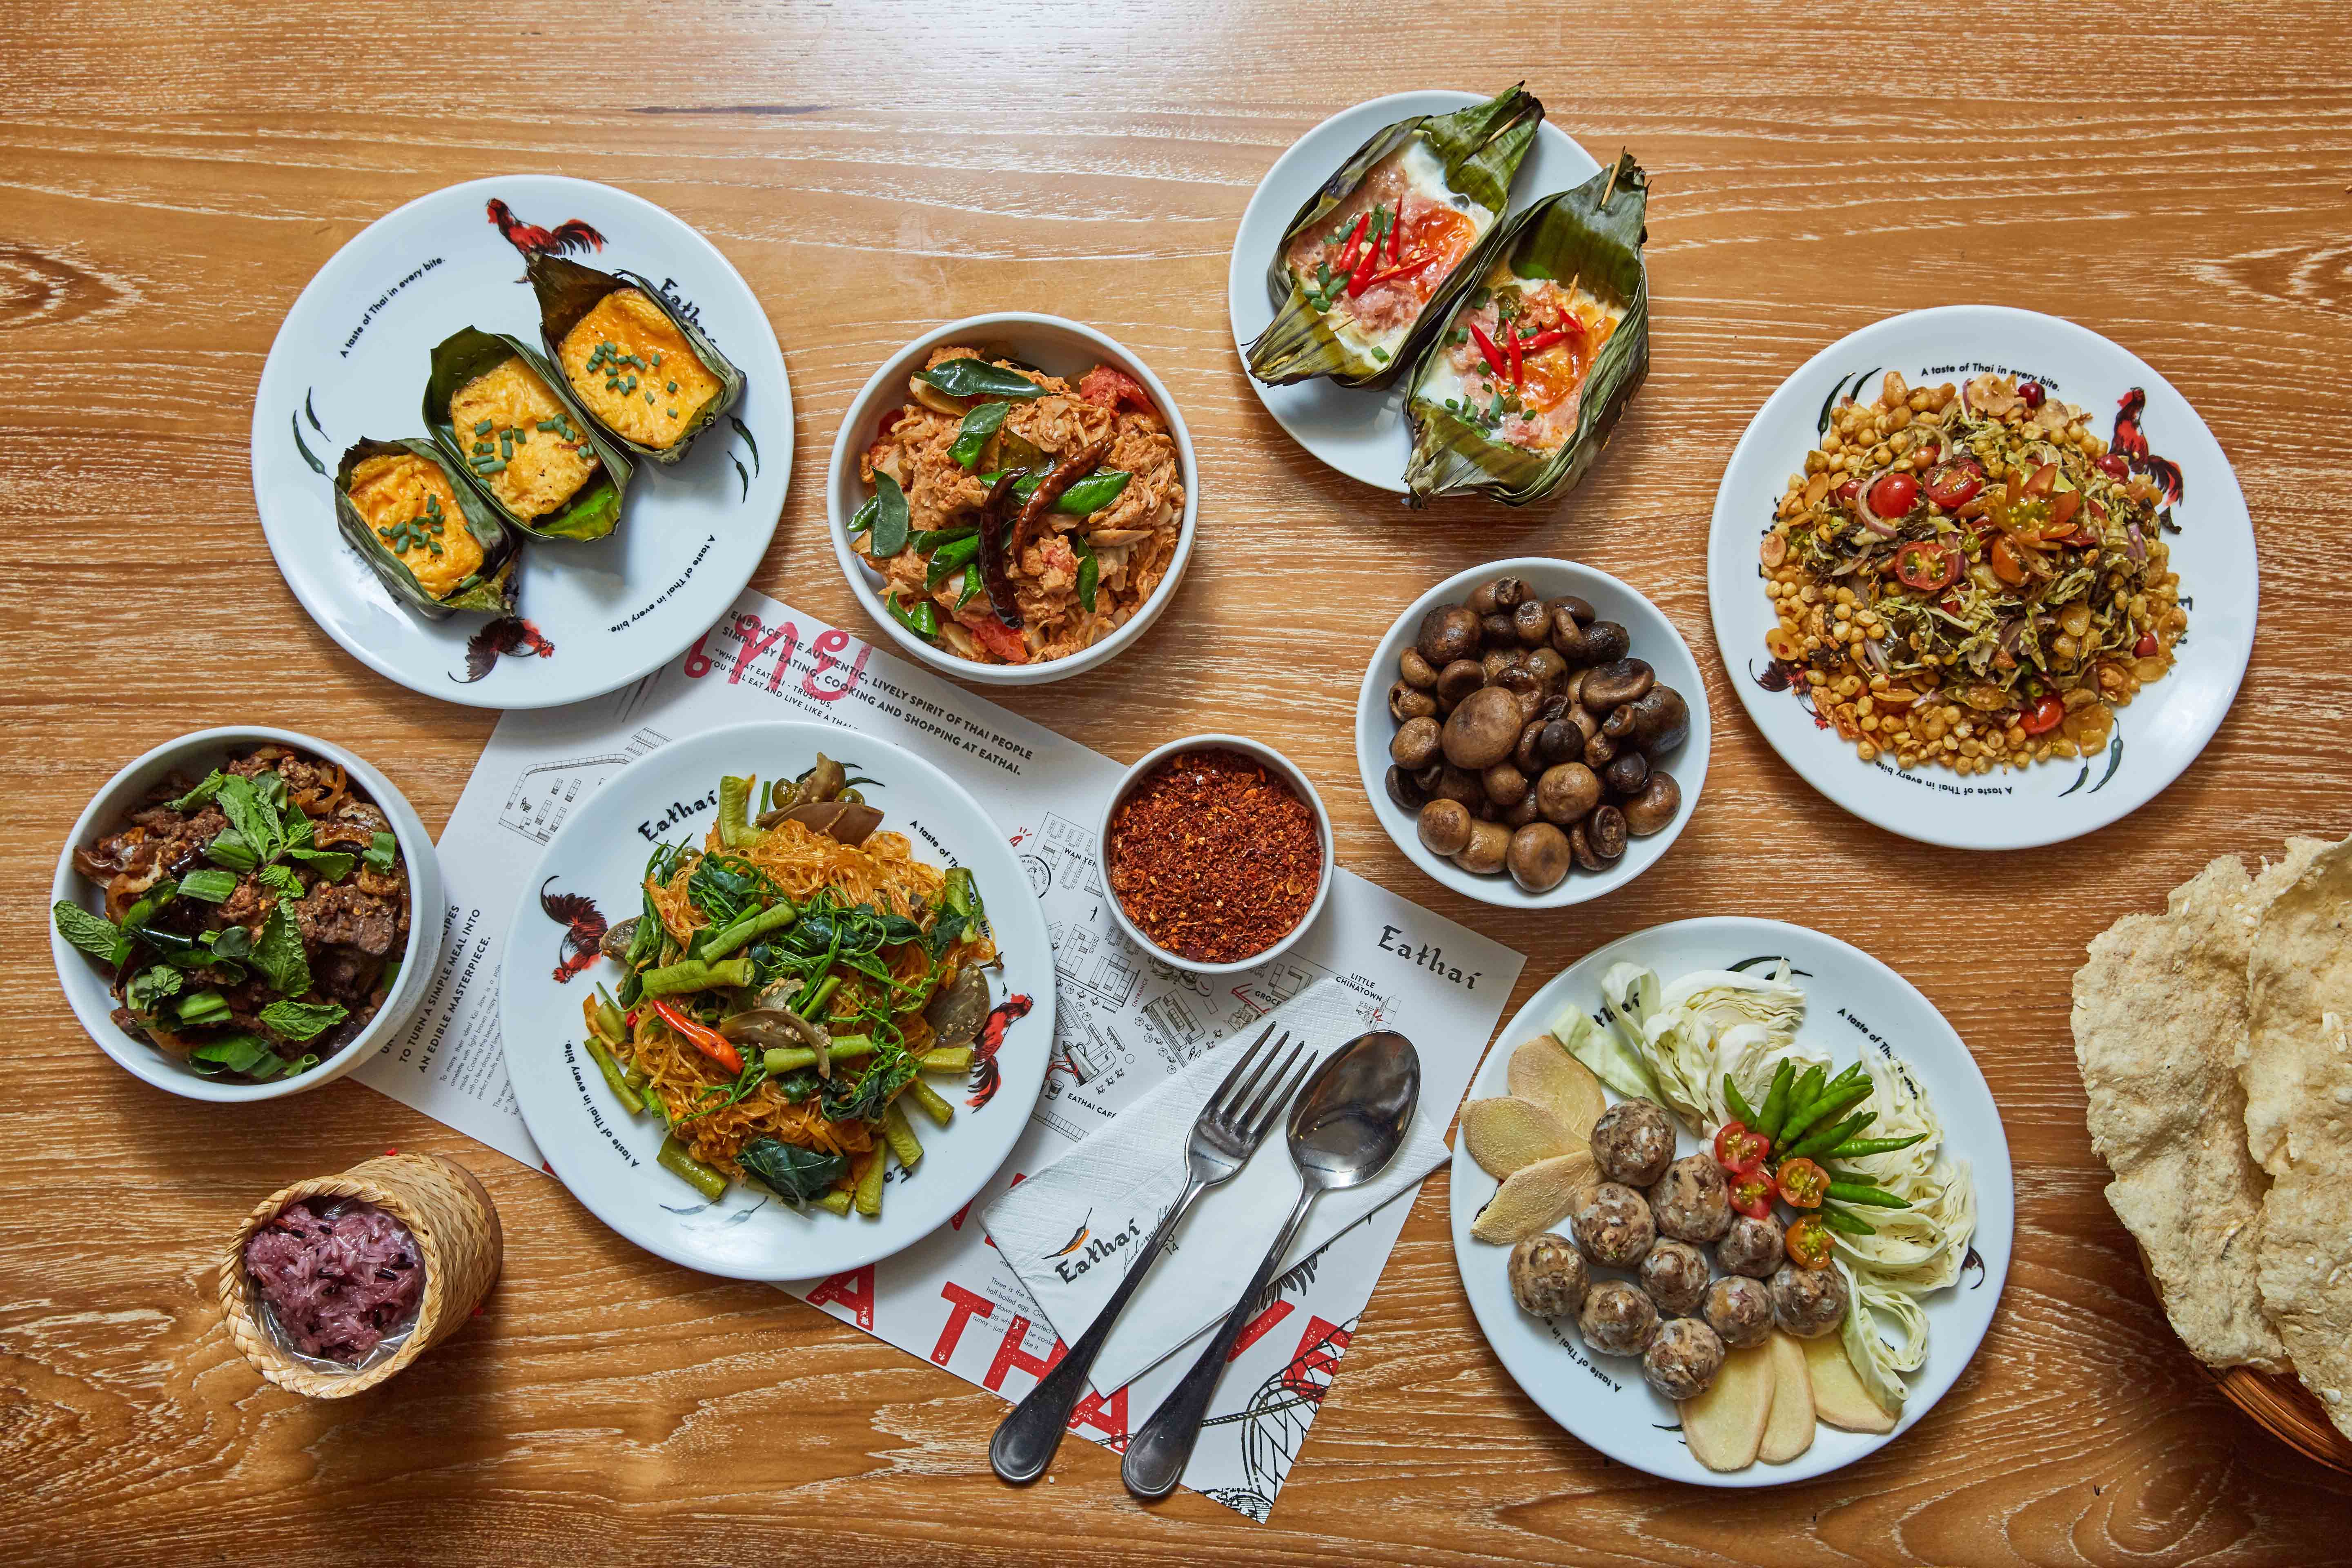 central embassy eathai ครบเครื่องครัว ๔ ภาค Eathai งานเทศกาลอาหาร อาหารอร่อย อาหารแนะนำ อีทไทย เซ็นทรัล เอ็มบาสซี่